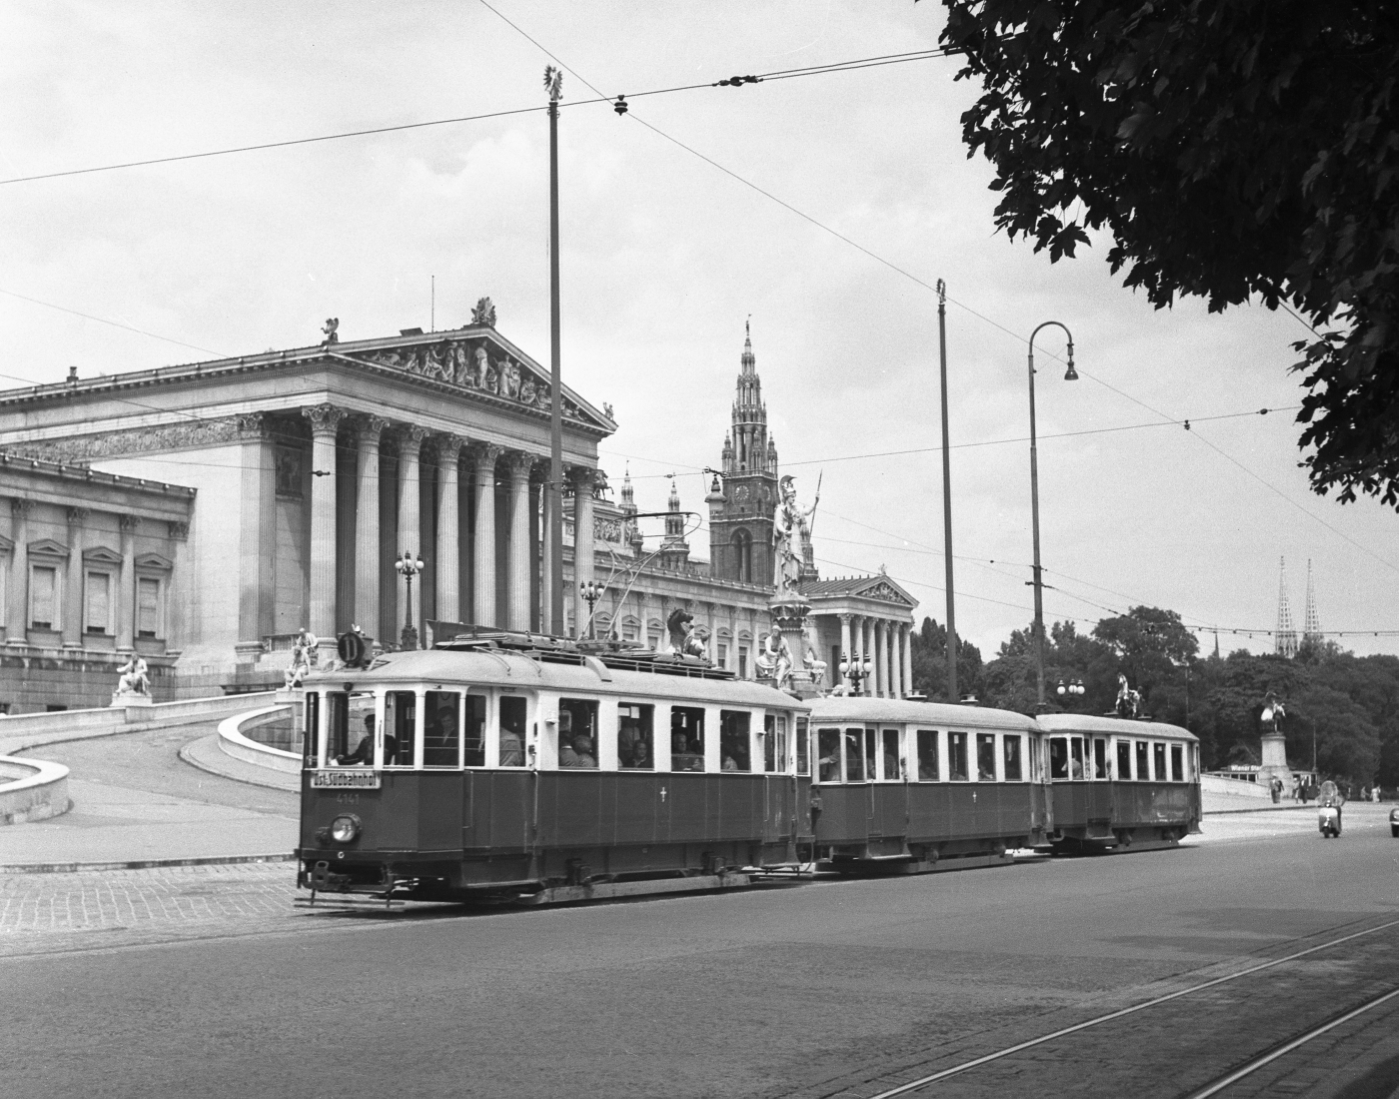 Zug der Linie D mit Dreiwagenzug der Type M-m-m vor dem Parlament am Ring 1953, im Hintergrund das Rathaus